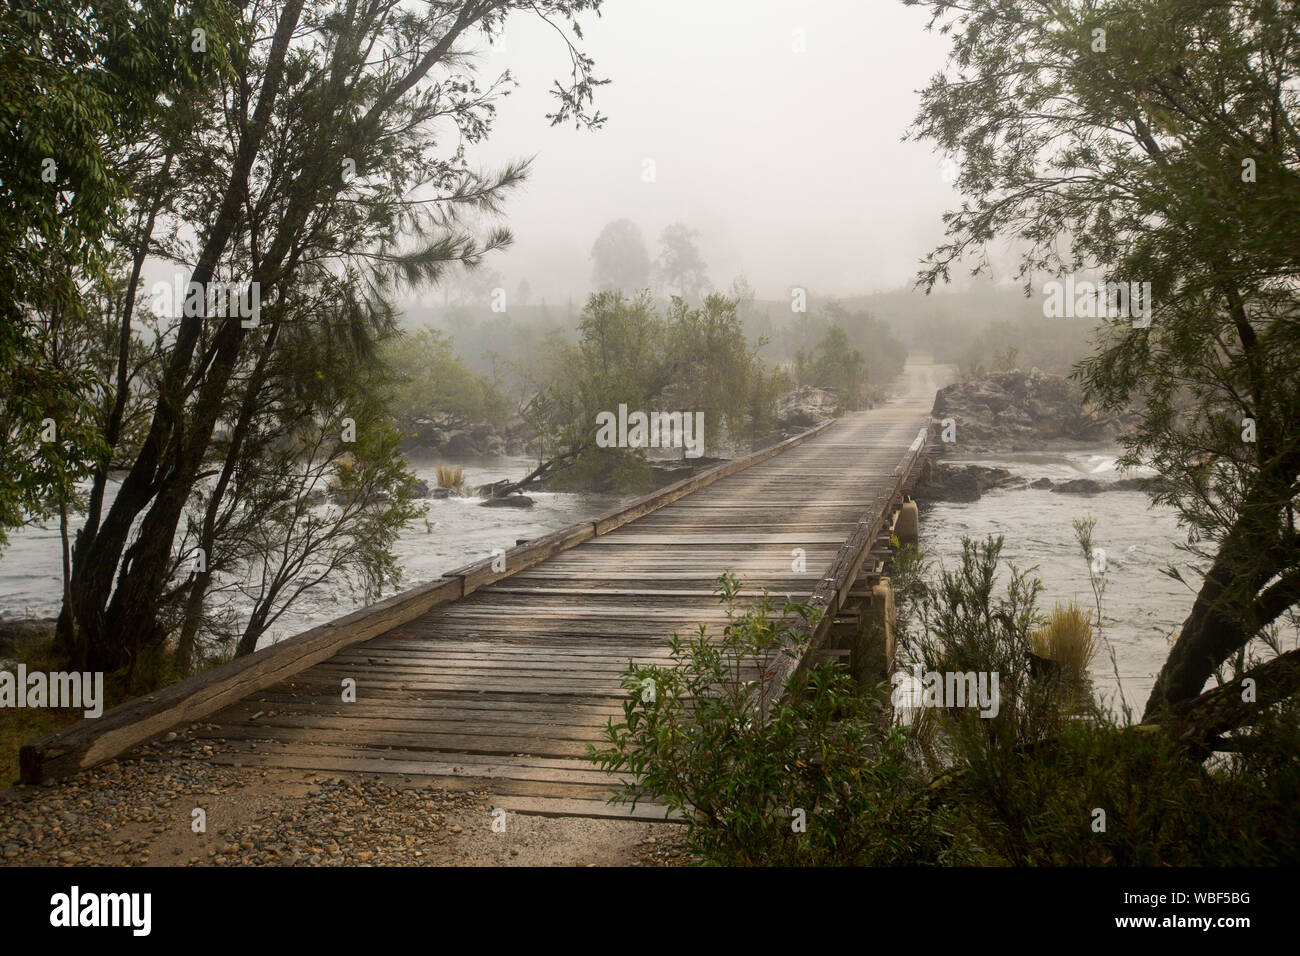 Route de bois longue et étroite traversée de pont jonché de roches de la rivière Mann ourlé à arbres et disparaître dans la brume du petit matin dans le NSW Australie Banque D'Images